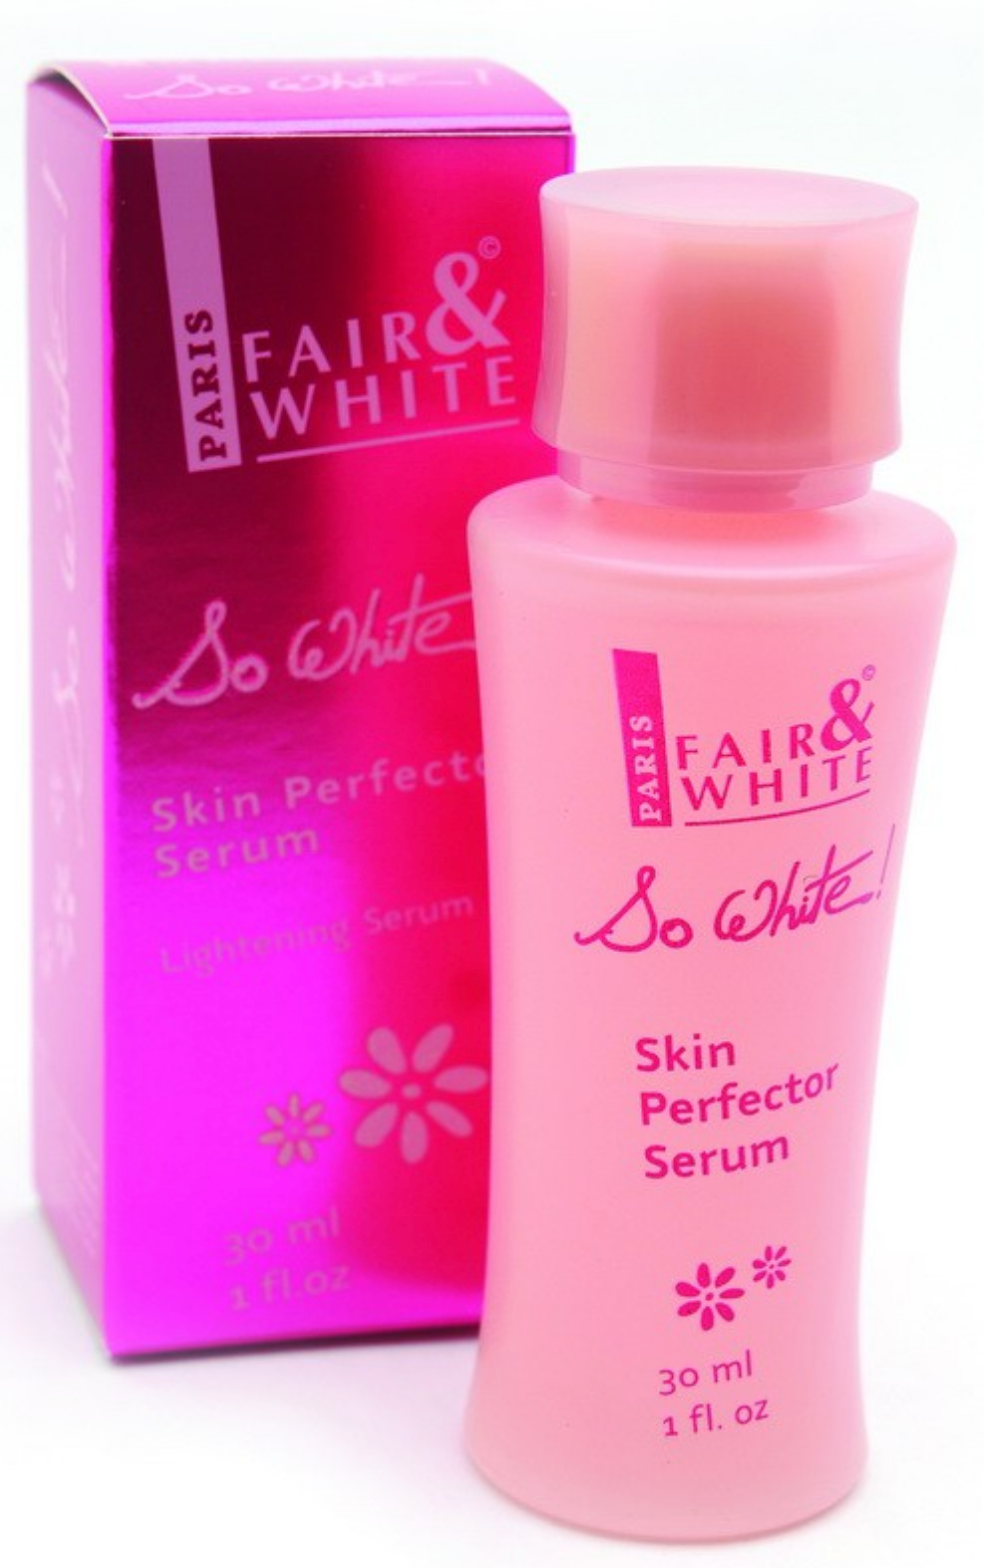 Fair & White So White! Skin Perfector Serum - 30ml